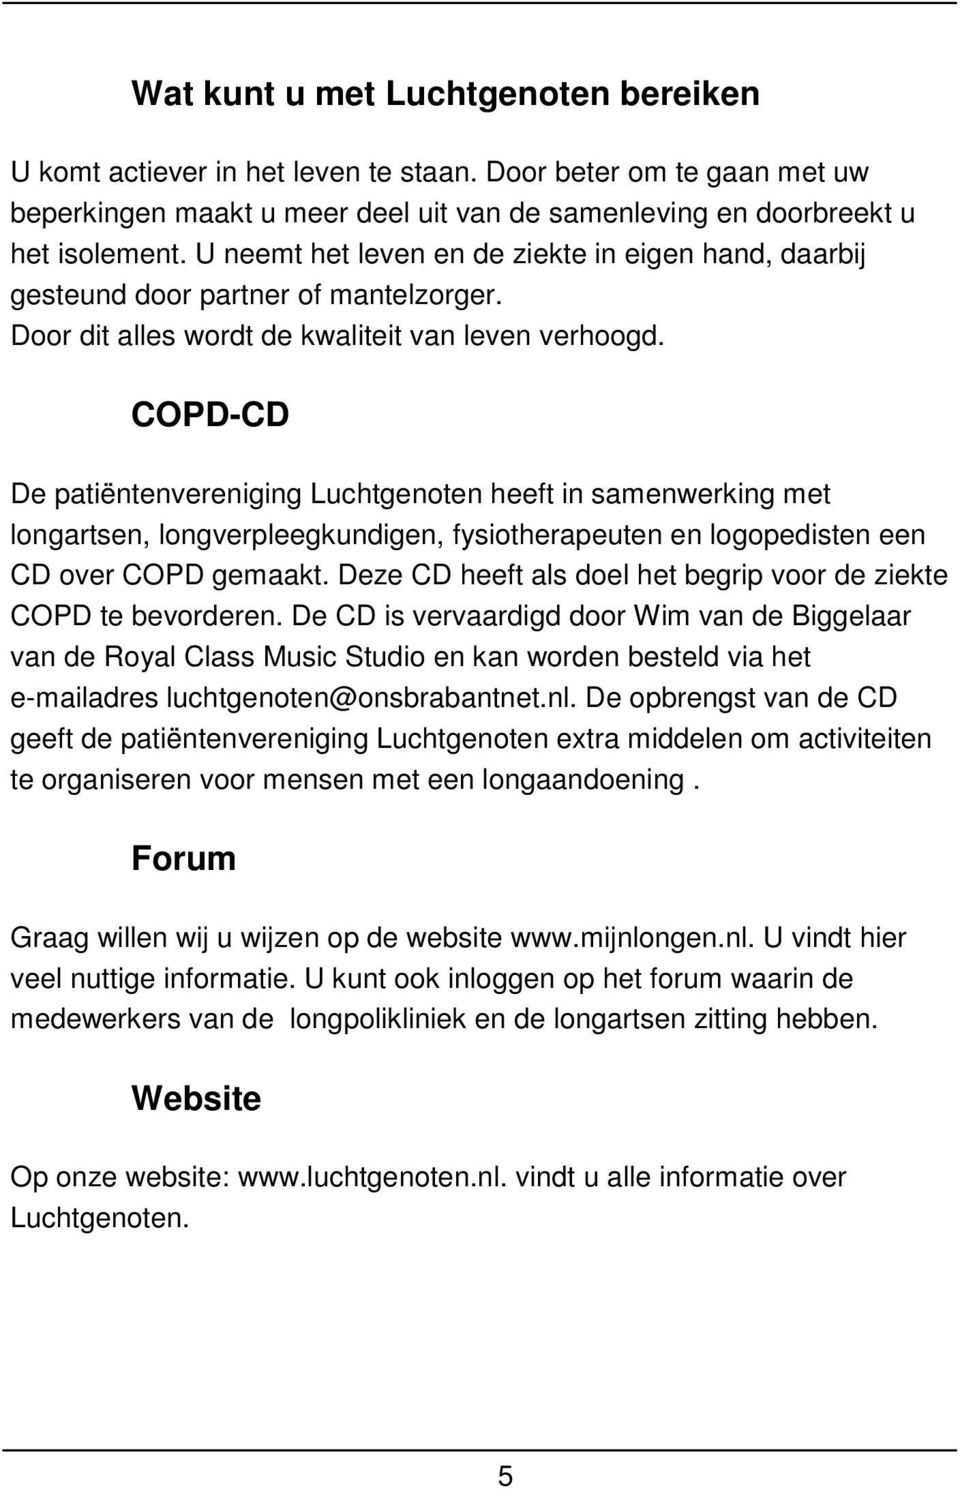 COPD-CD De patiëntenvereniging Luchtgenoten heeft in samenwerking met longartsen, longverpleegkundigen, fysiotherapeuten en logopedisten een CD over COPD gemaakt.